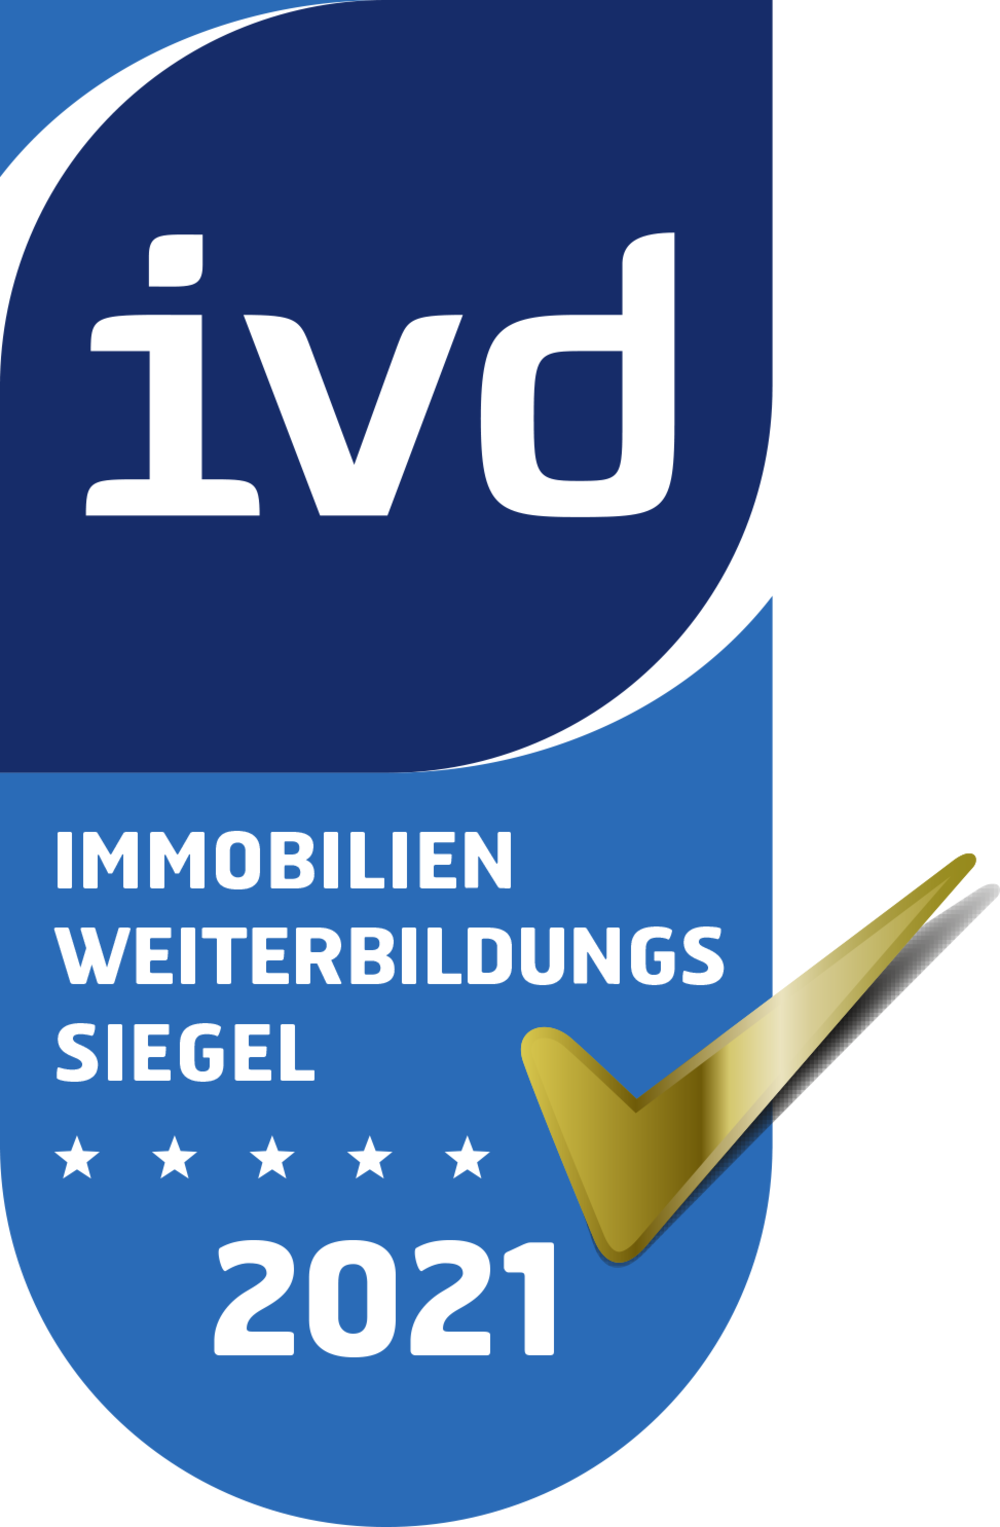 Qualitätssiegel des Immobilienverbandes Deutschland IVD – Immobilien Weiterbildungssiegel 2021